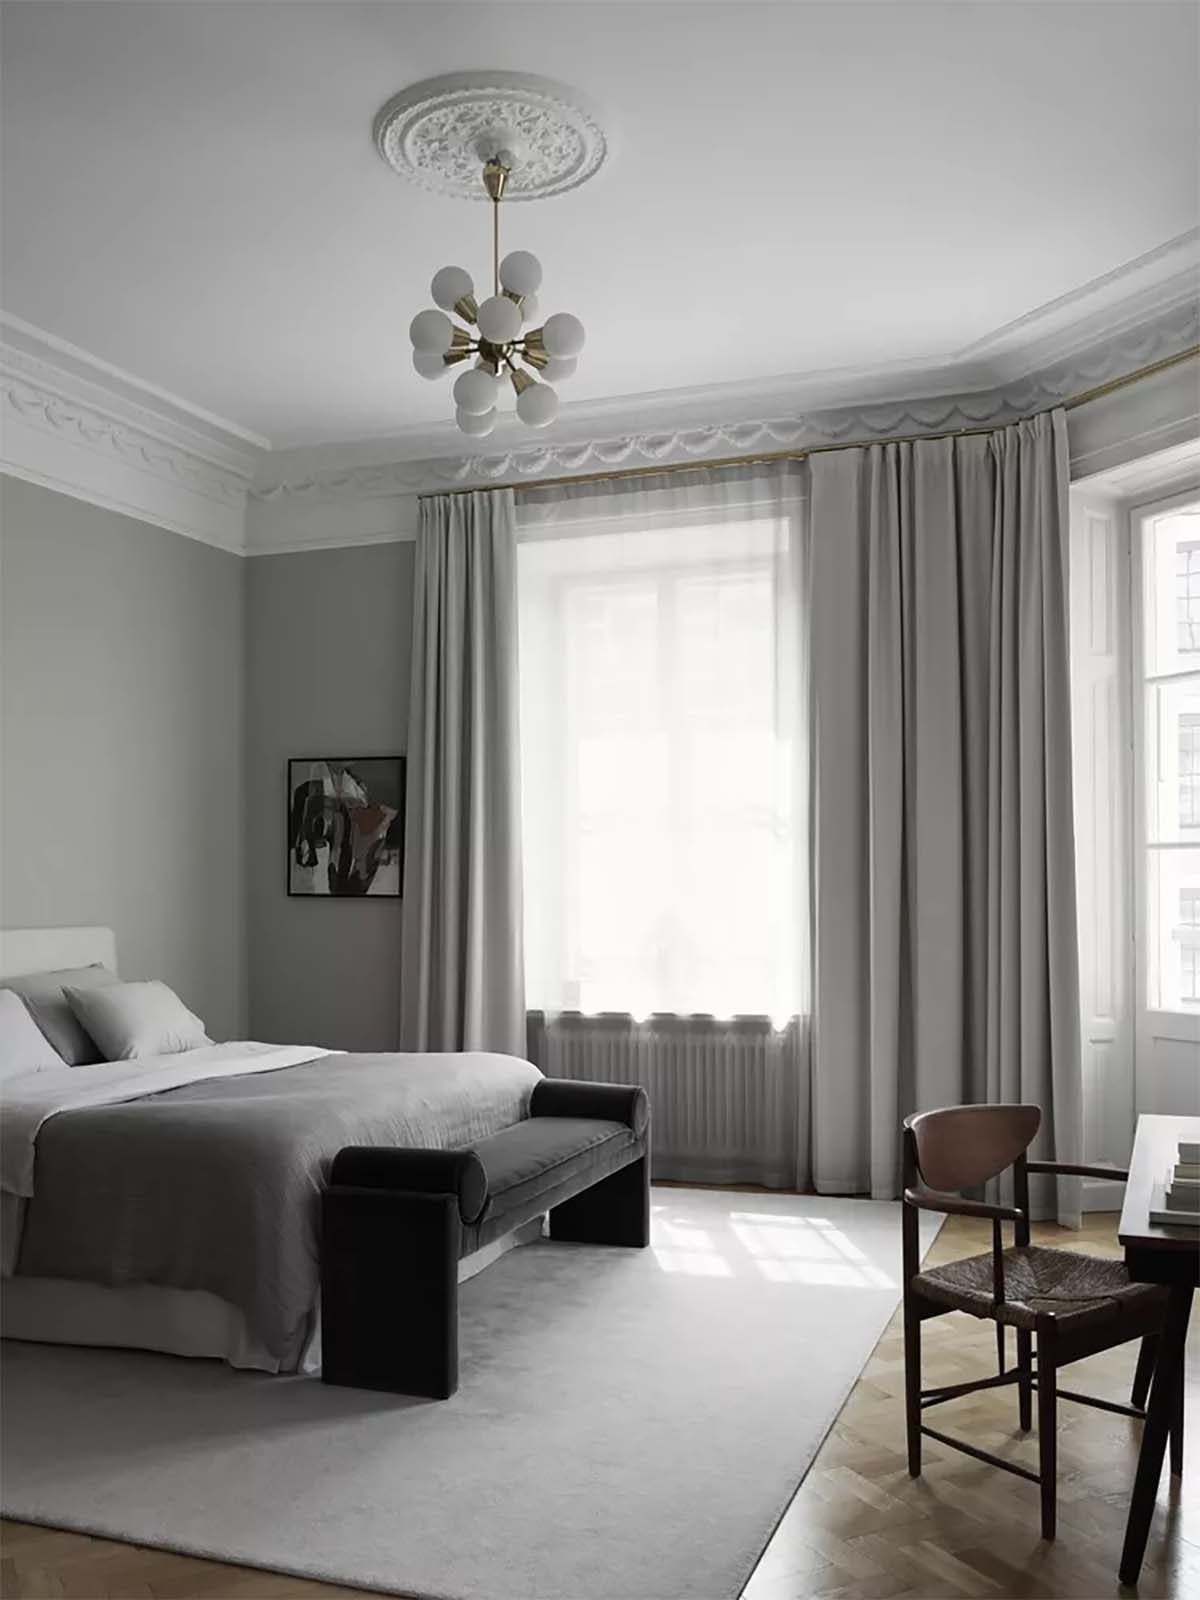 اتاق خواب طوسی و سفید با دیوارهای طوسی و تخت سفید